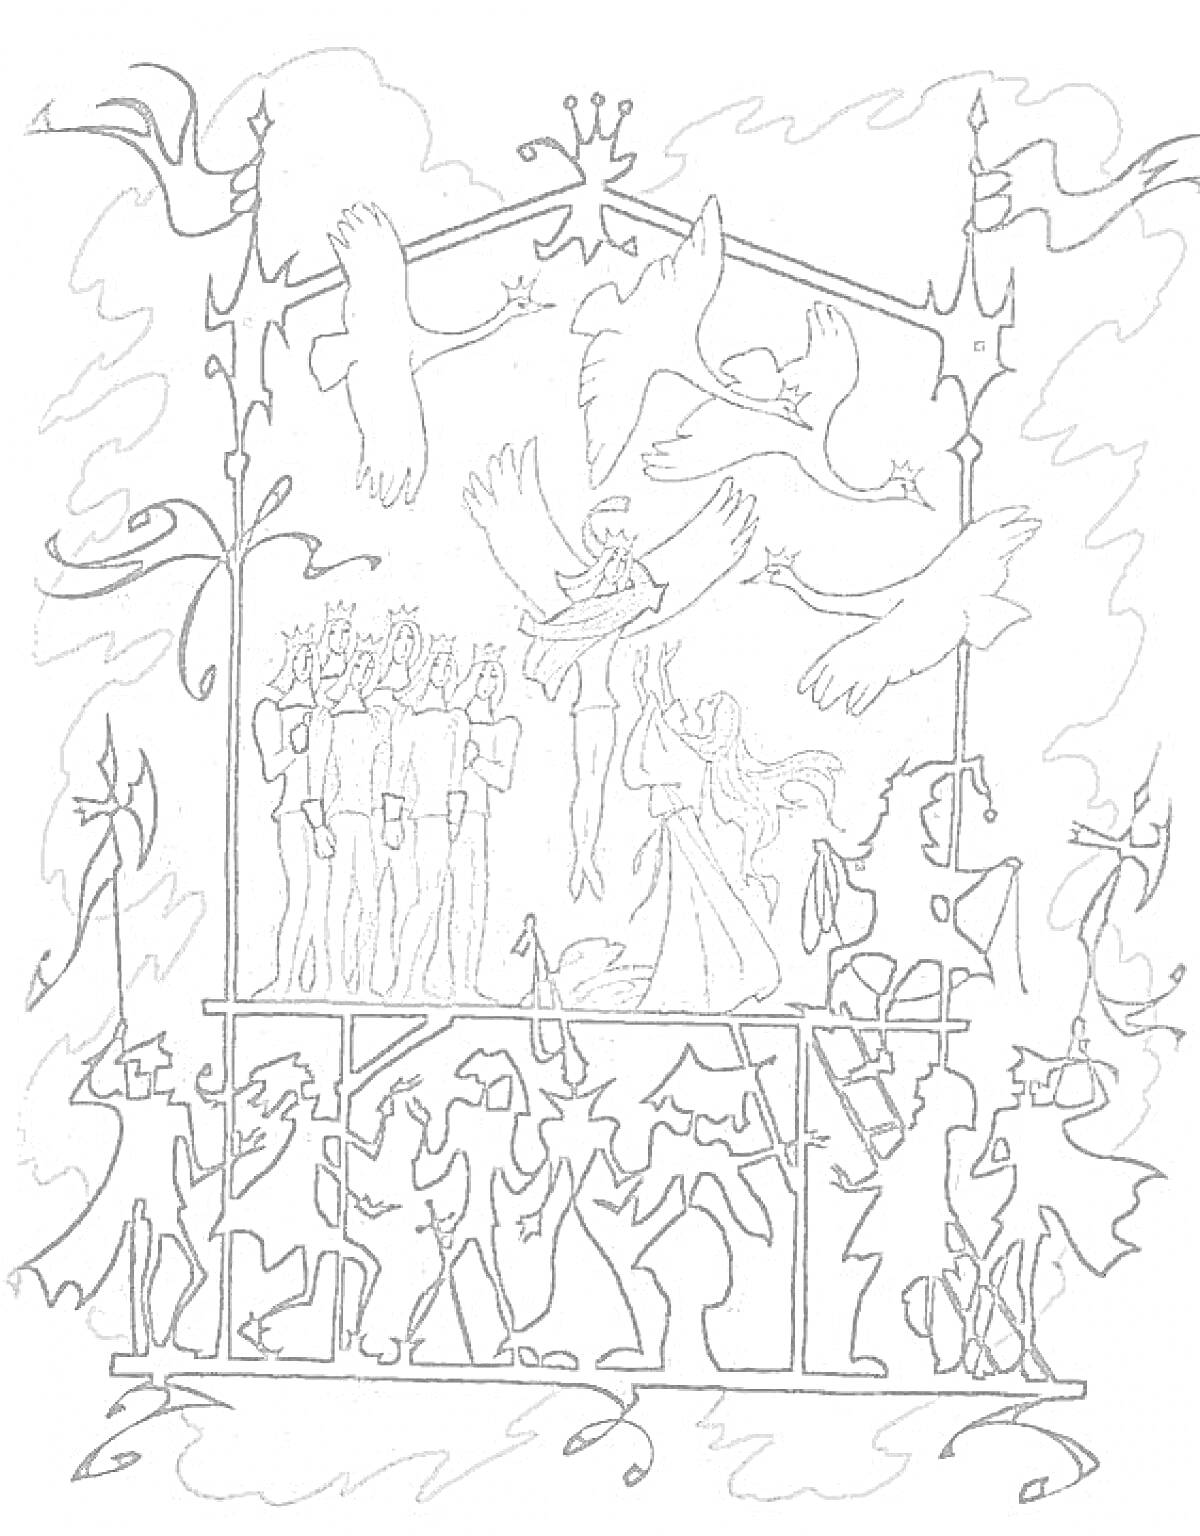 Раскраска Дикие лебеди, группа танцующих людей, пять стоящих мужчин в коронах, женщина с крыльями лебедя, летящие лебеди на фоне